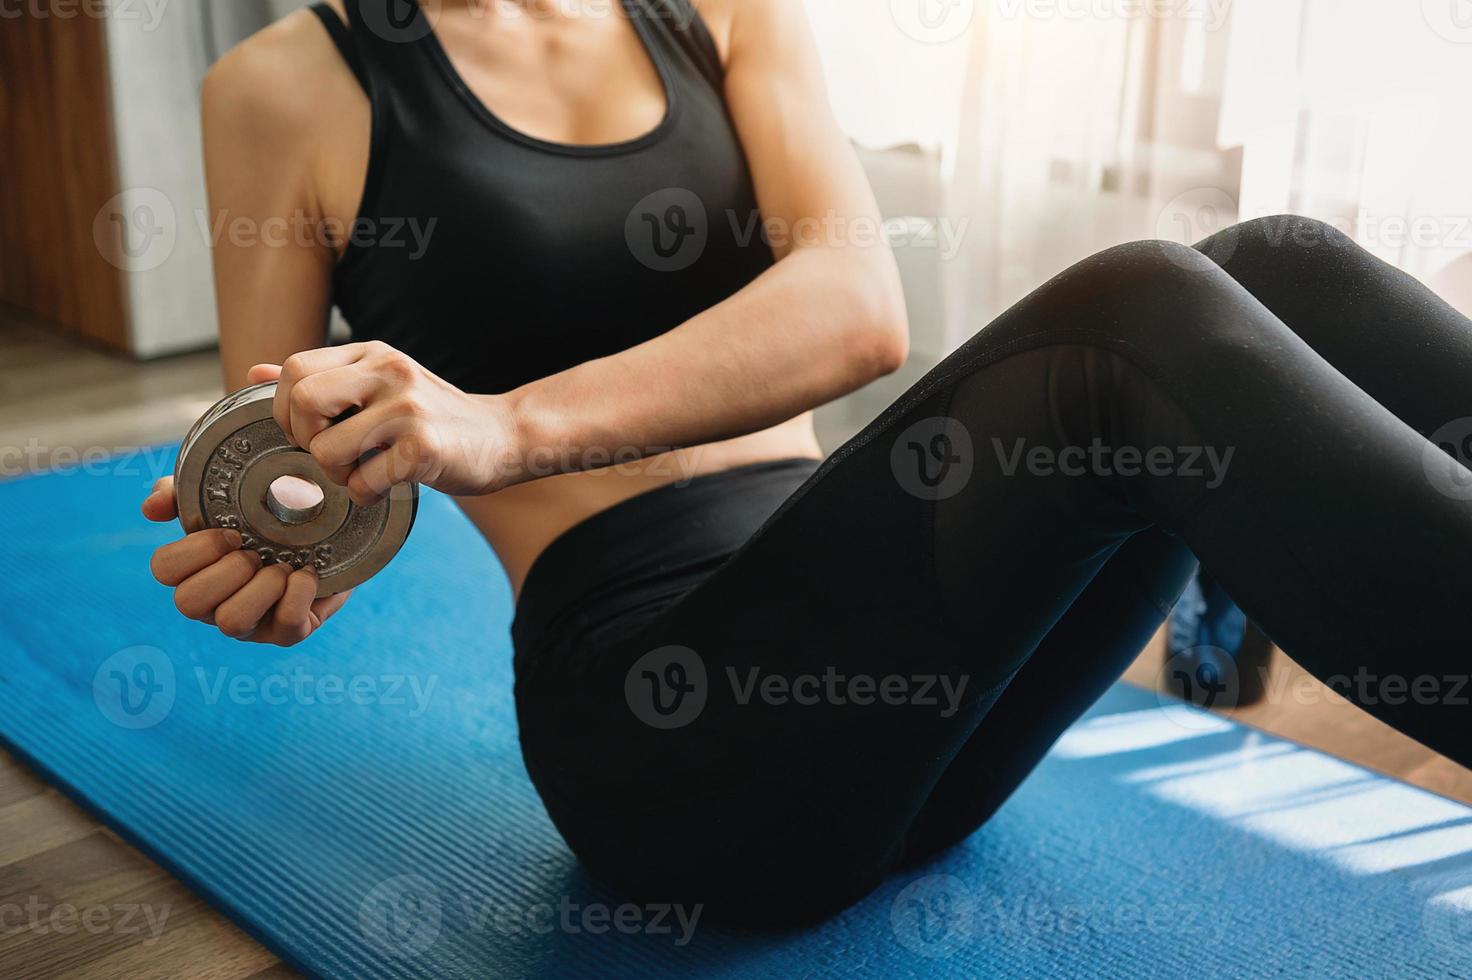 mujer decidida a perder peso en casa y hacer ejercicio con pesas. concepto de deporte y recreación. foto